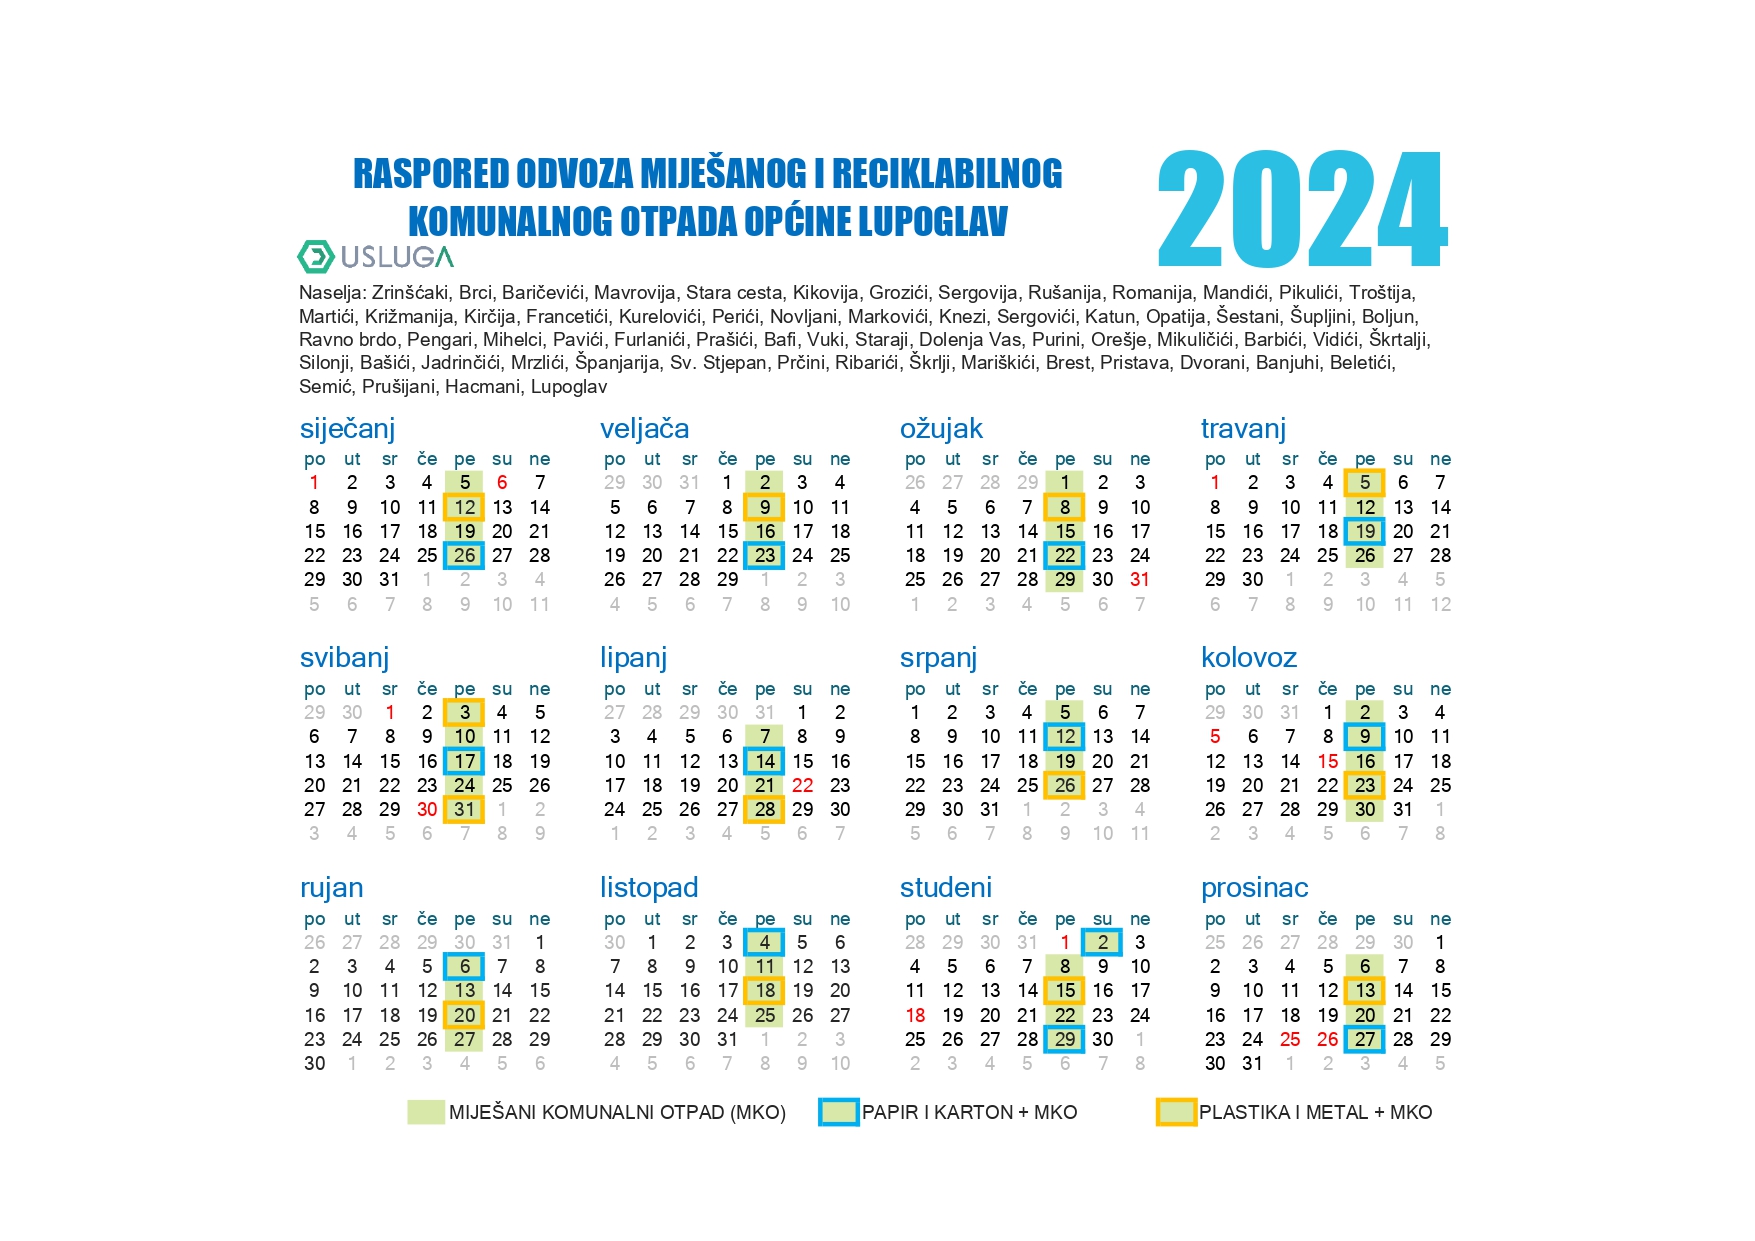 Raspored odvoza komunalnogotpada za 2024 godinu